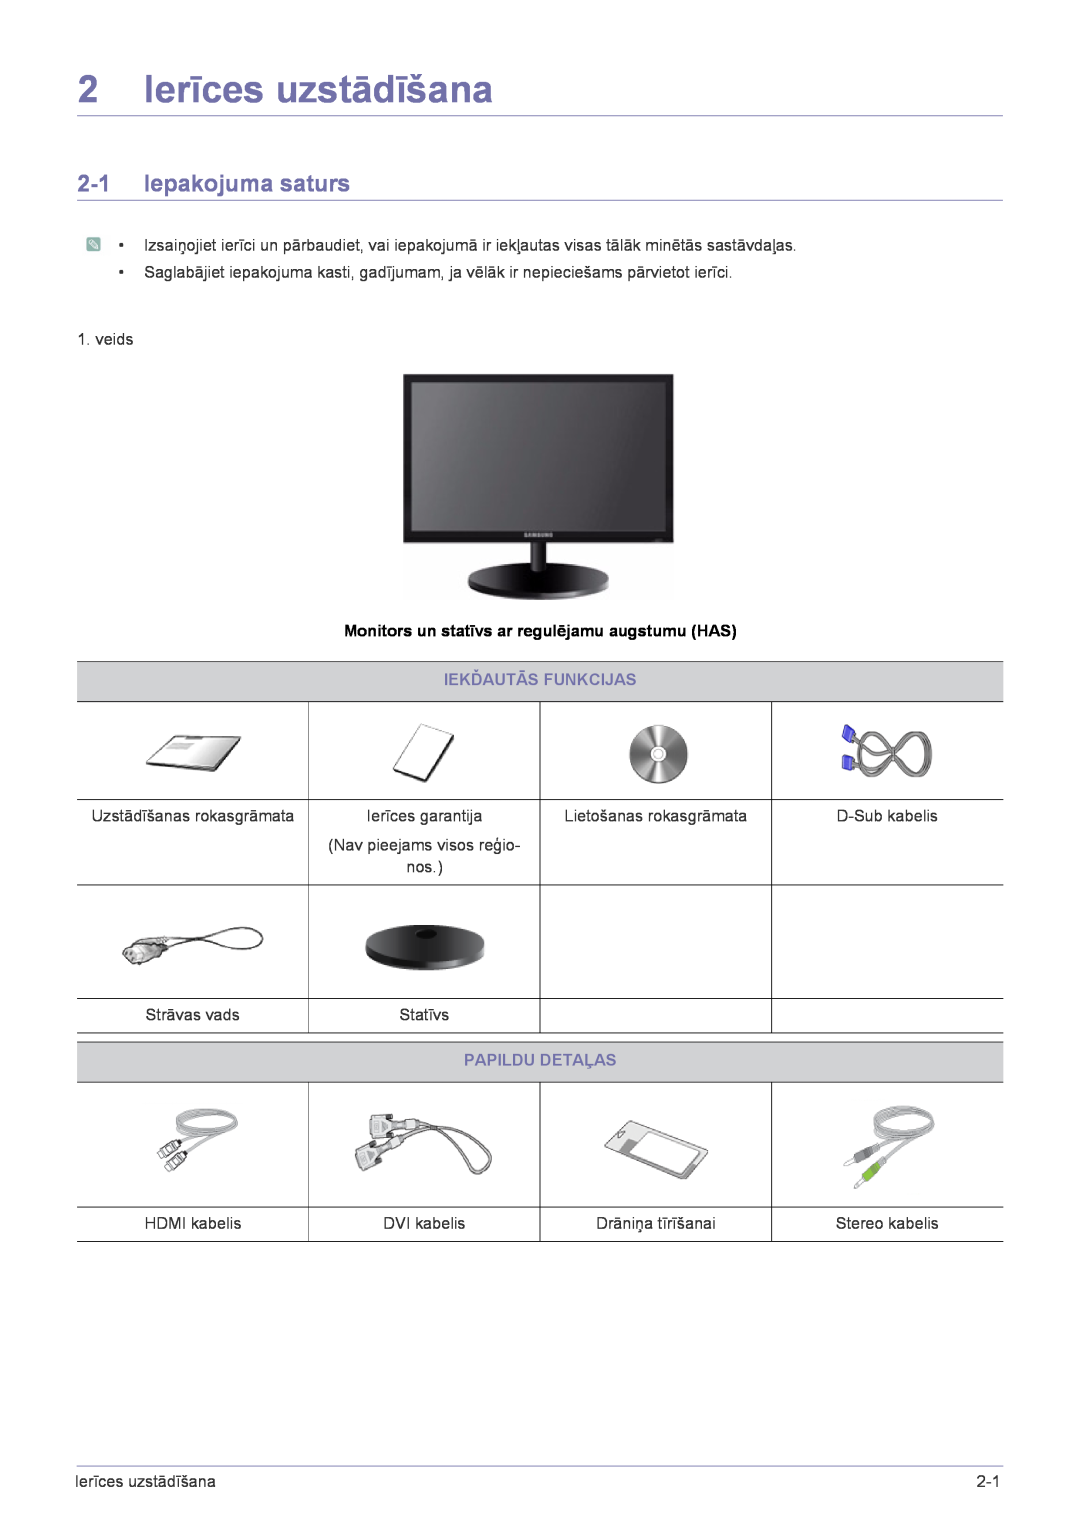 Samsung LS19CLNSB/EN manual 2 Ierīces uzstādīšana, Iepakojuma saturs, Monitors un statīvs ar regulējamu augstumu HAS 